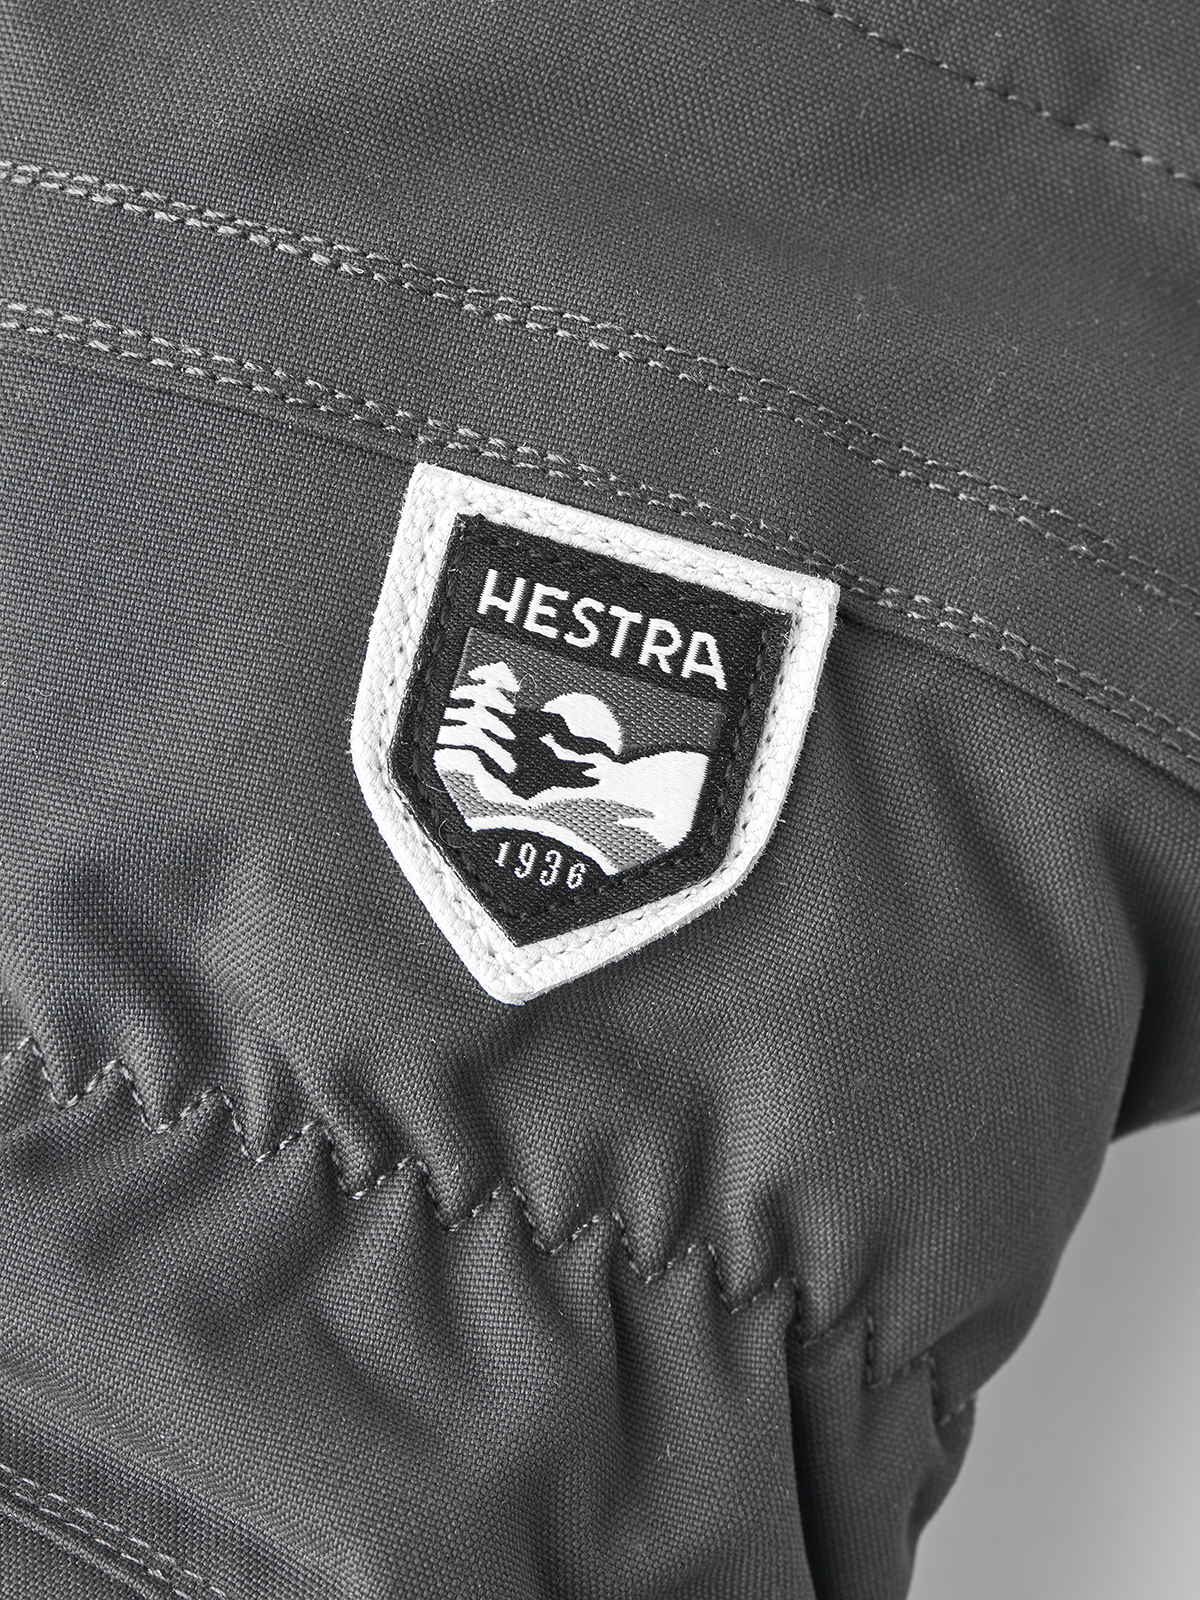 Hestra Army Leather Heli Ski Mitt Grey 30571 350 